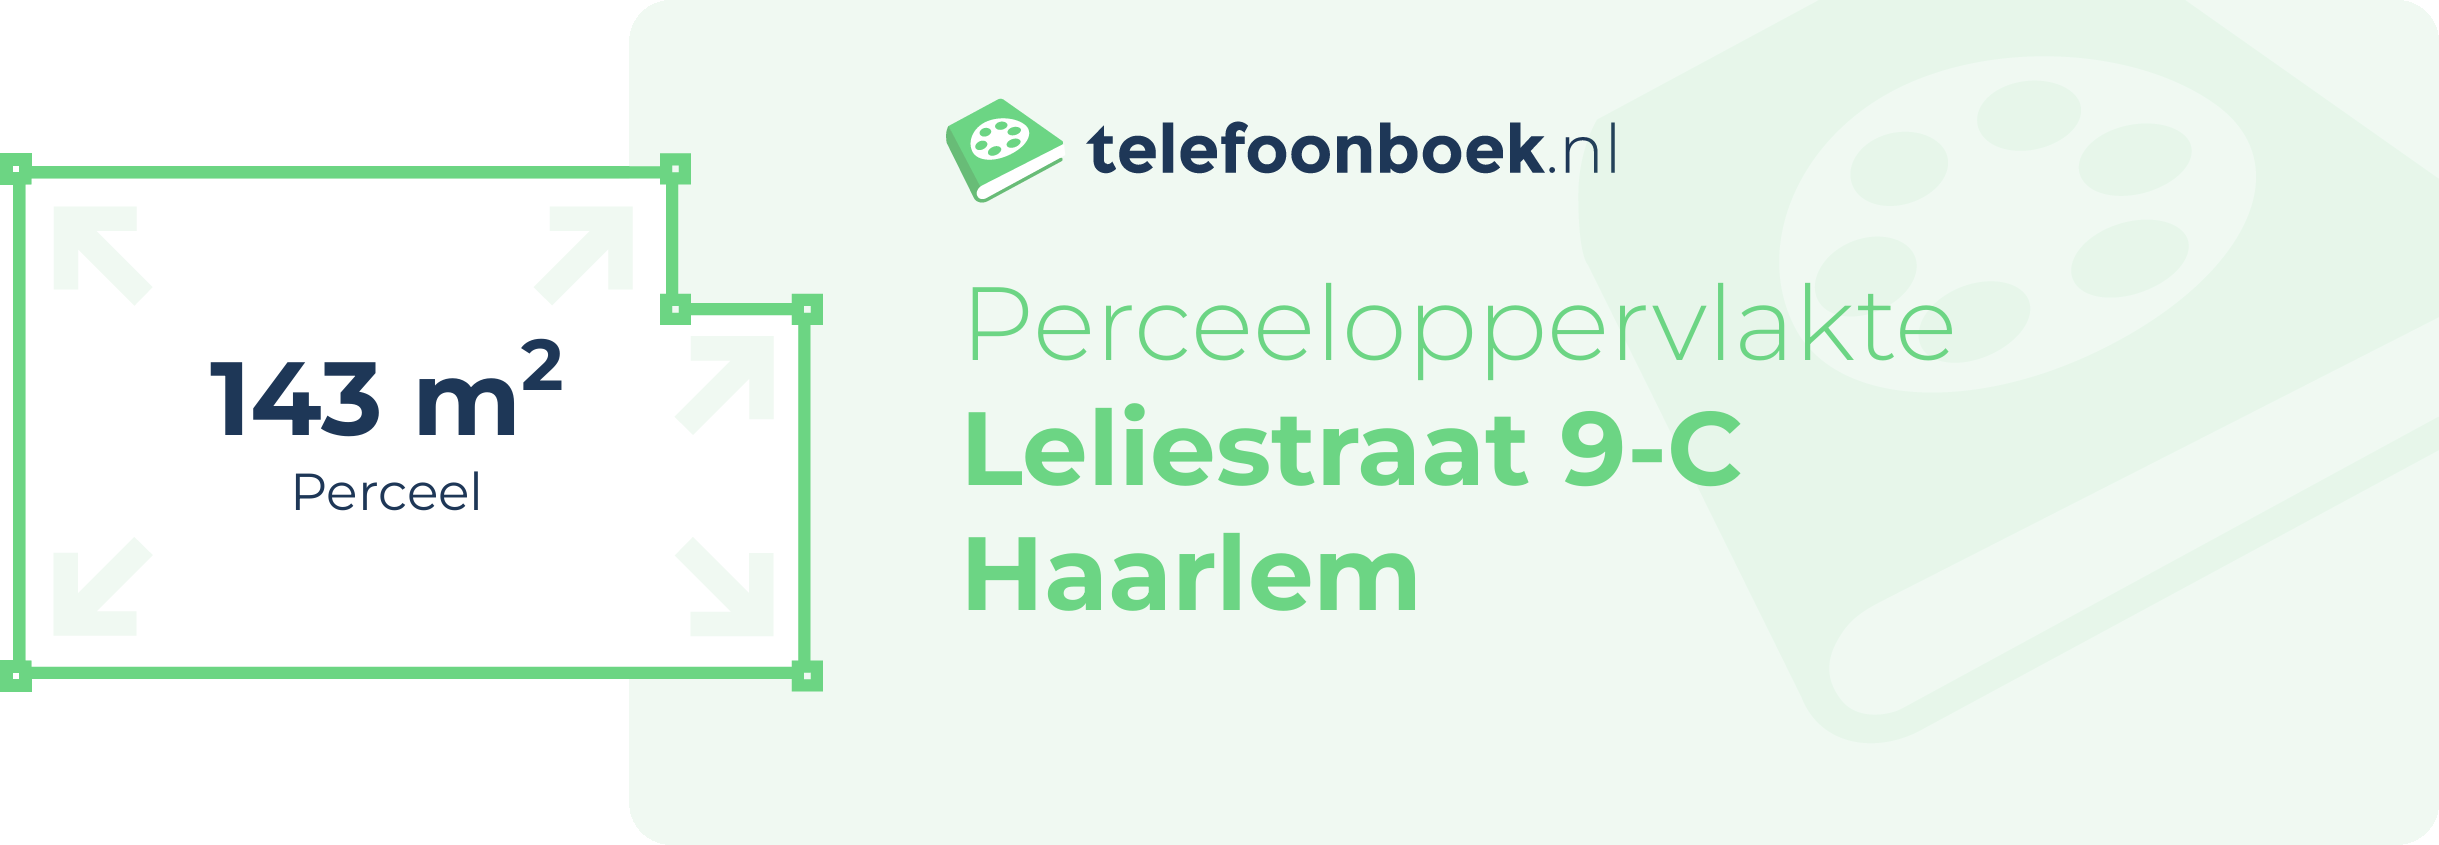 Perceeloppervlakte Leliestraat 9-C Haarlem